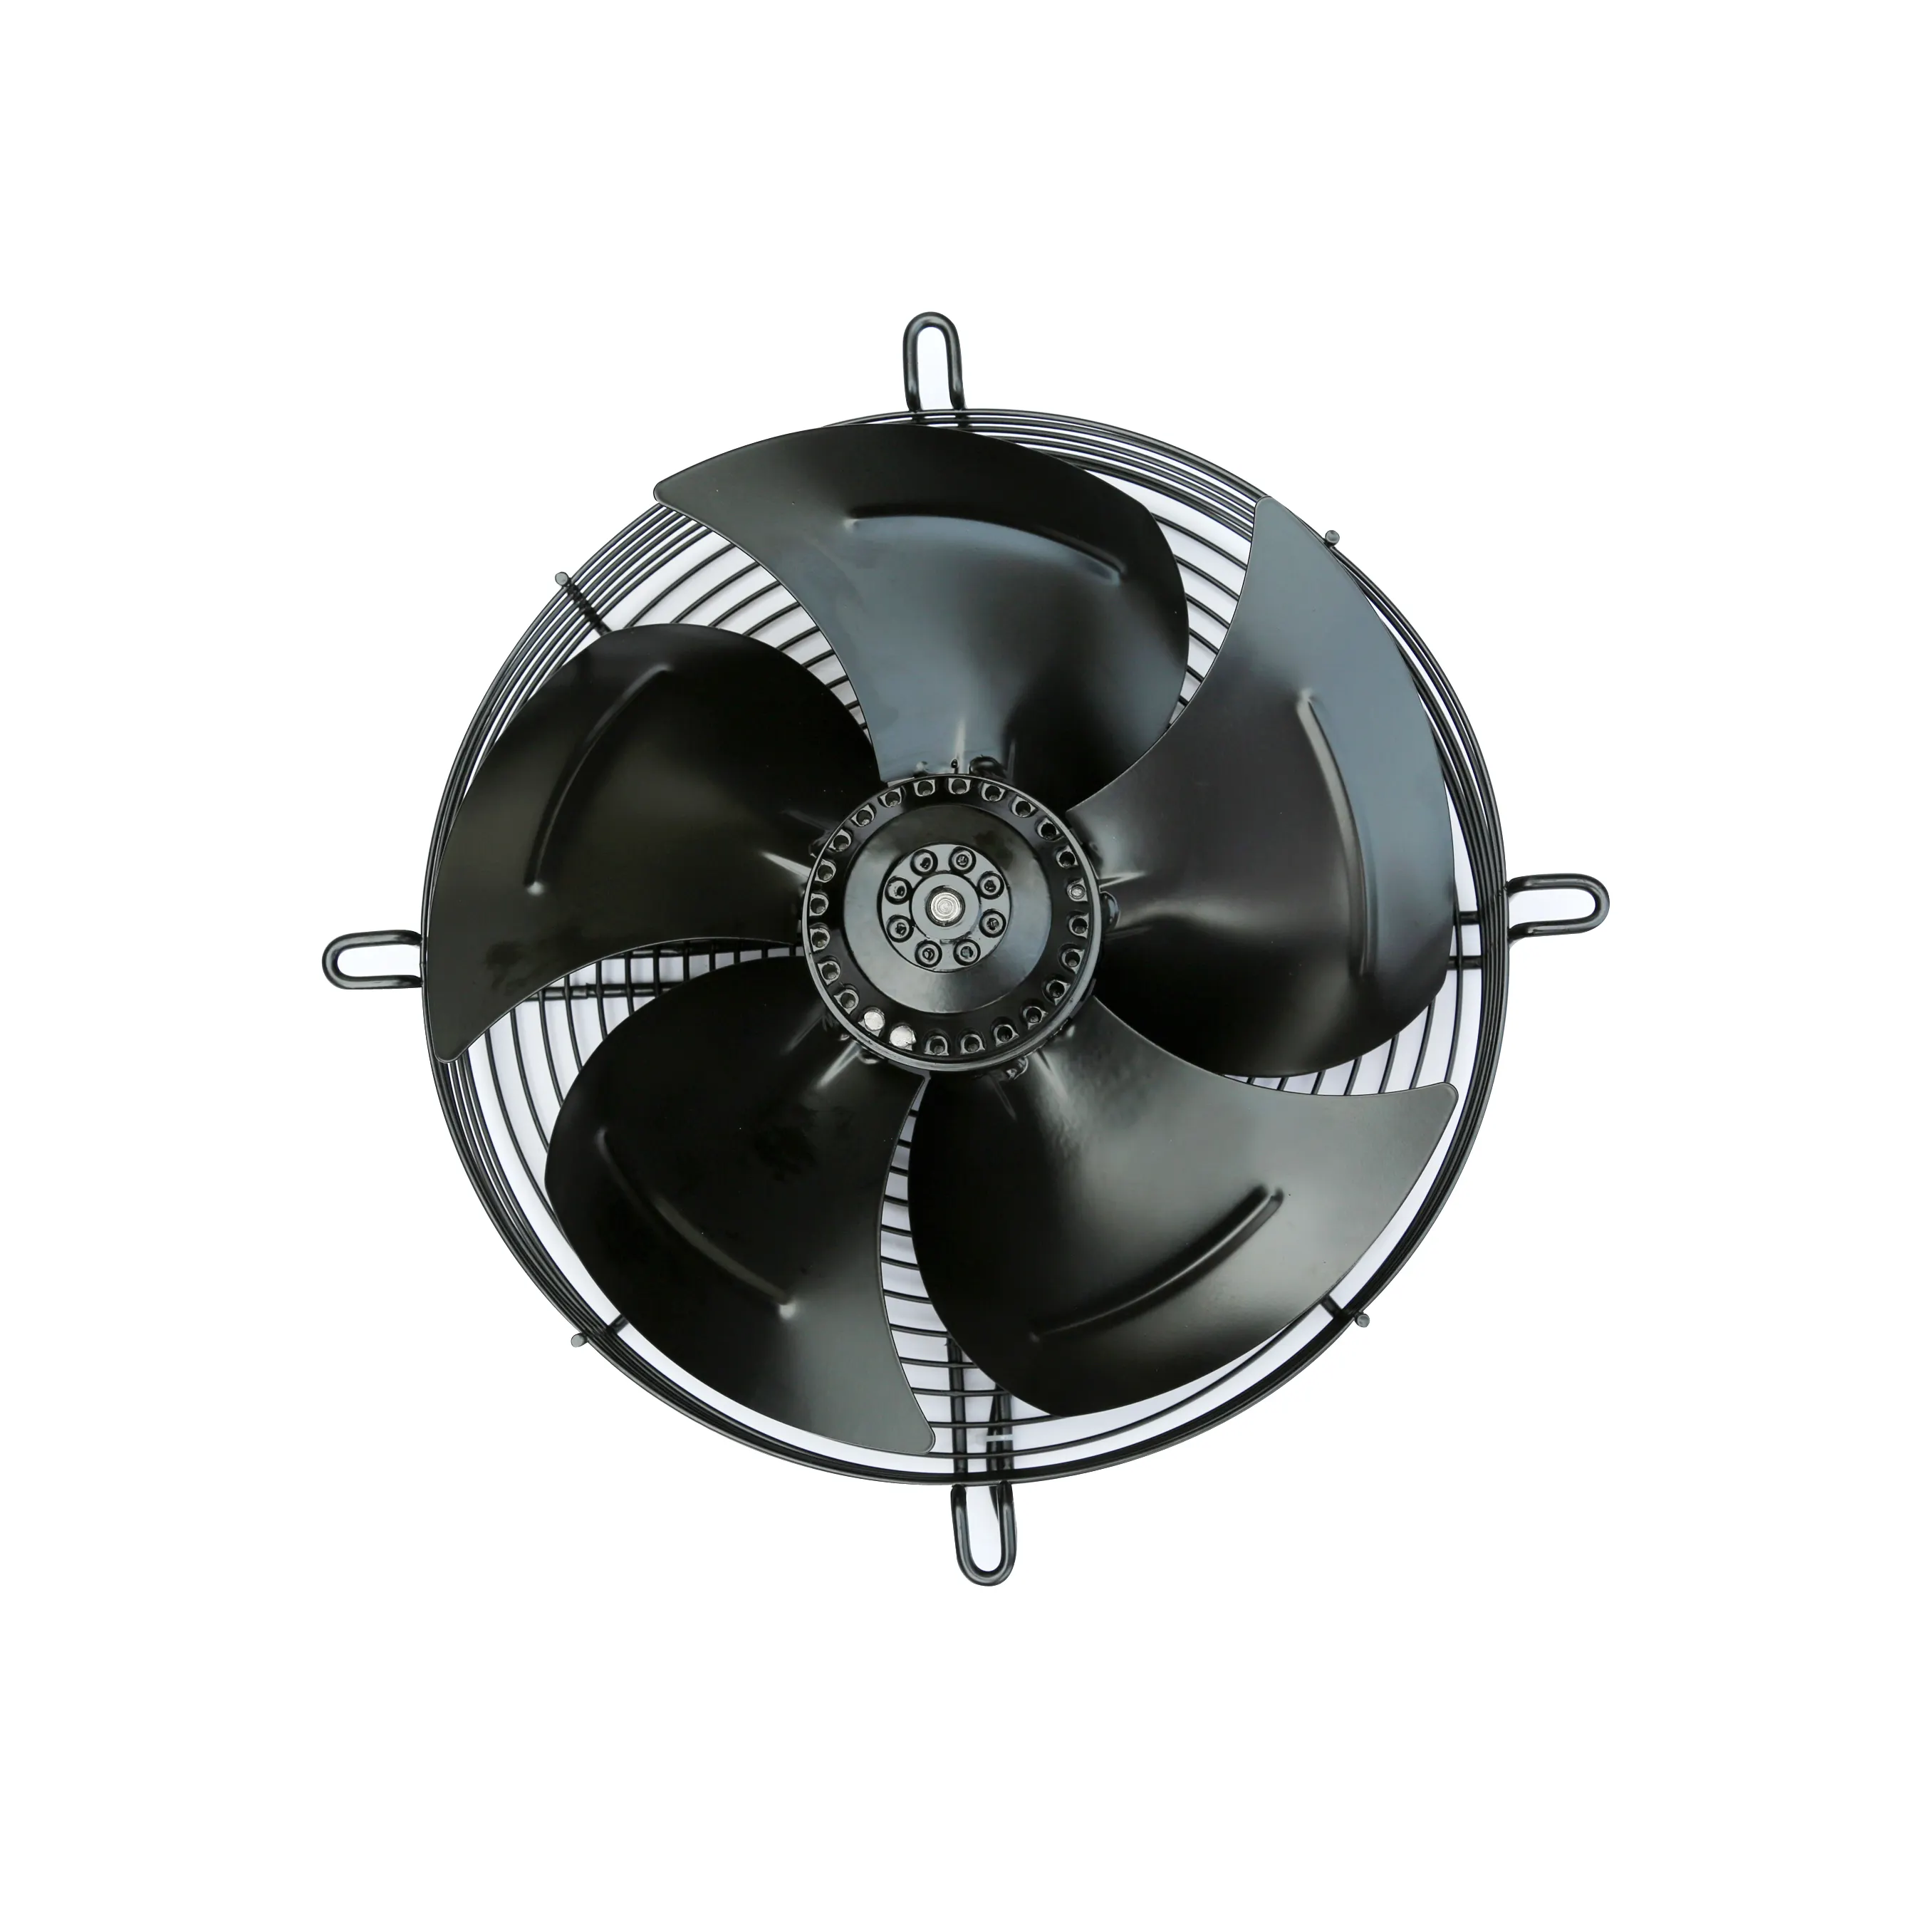 Fridge Freezer Fan Motor Stand Mount Bracket 10W Elco style Condenser Evap Fan